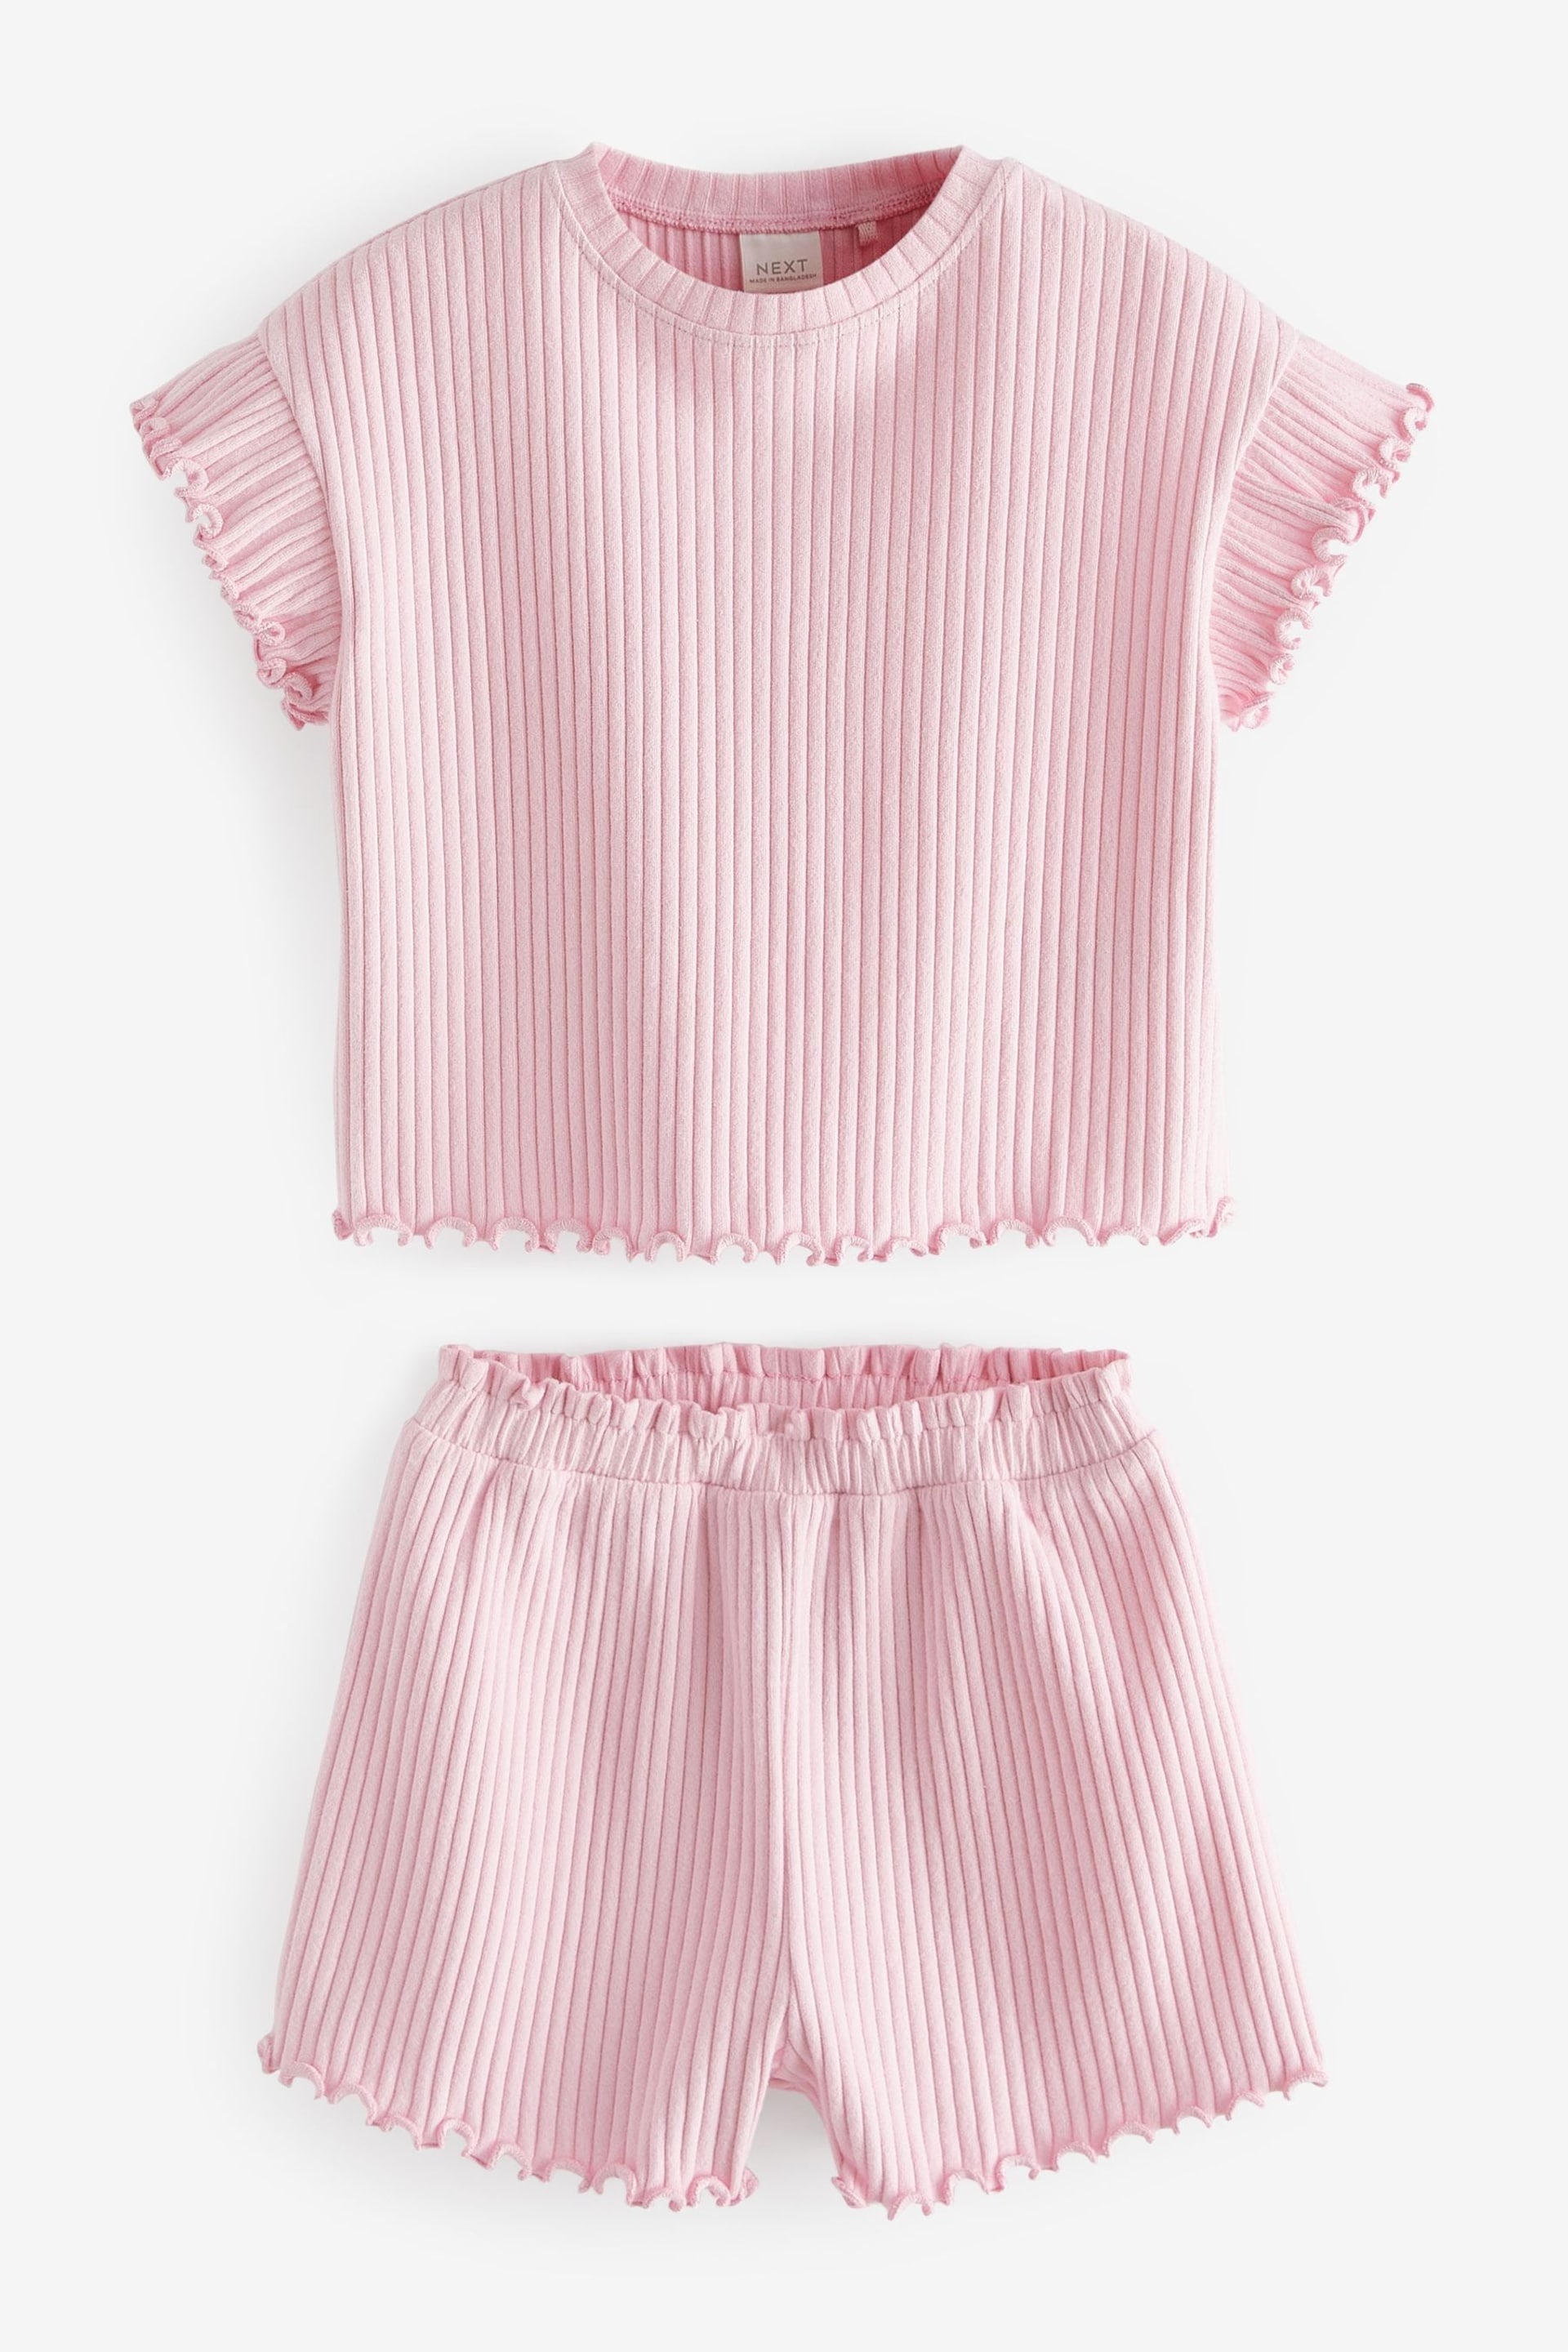 Pink Rib Short Sleeve T-Shirt And Shorts Set (3mths-7yrs) - Image 5 of 7